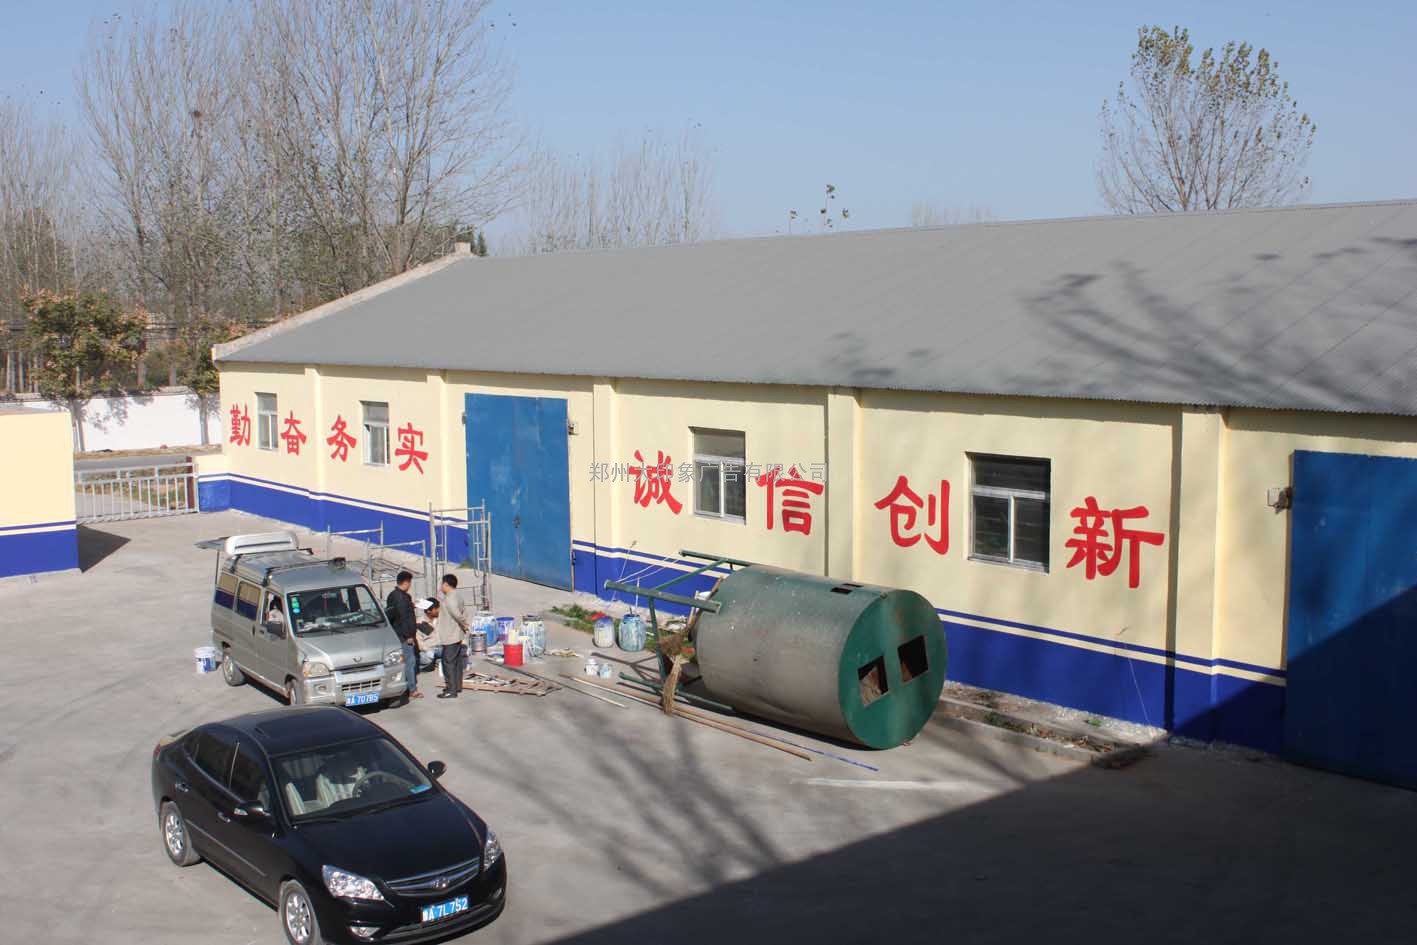 +河南+郑州厂房粉刷写字+郑州饲料厂外墙乳胶漆粉刷